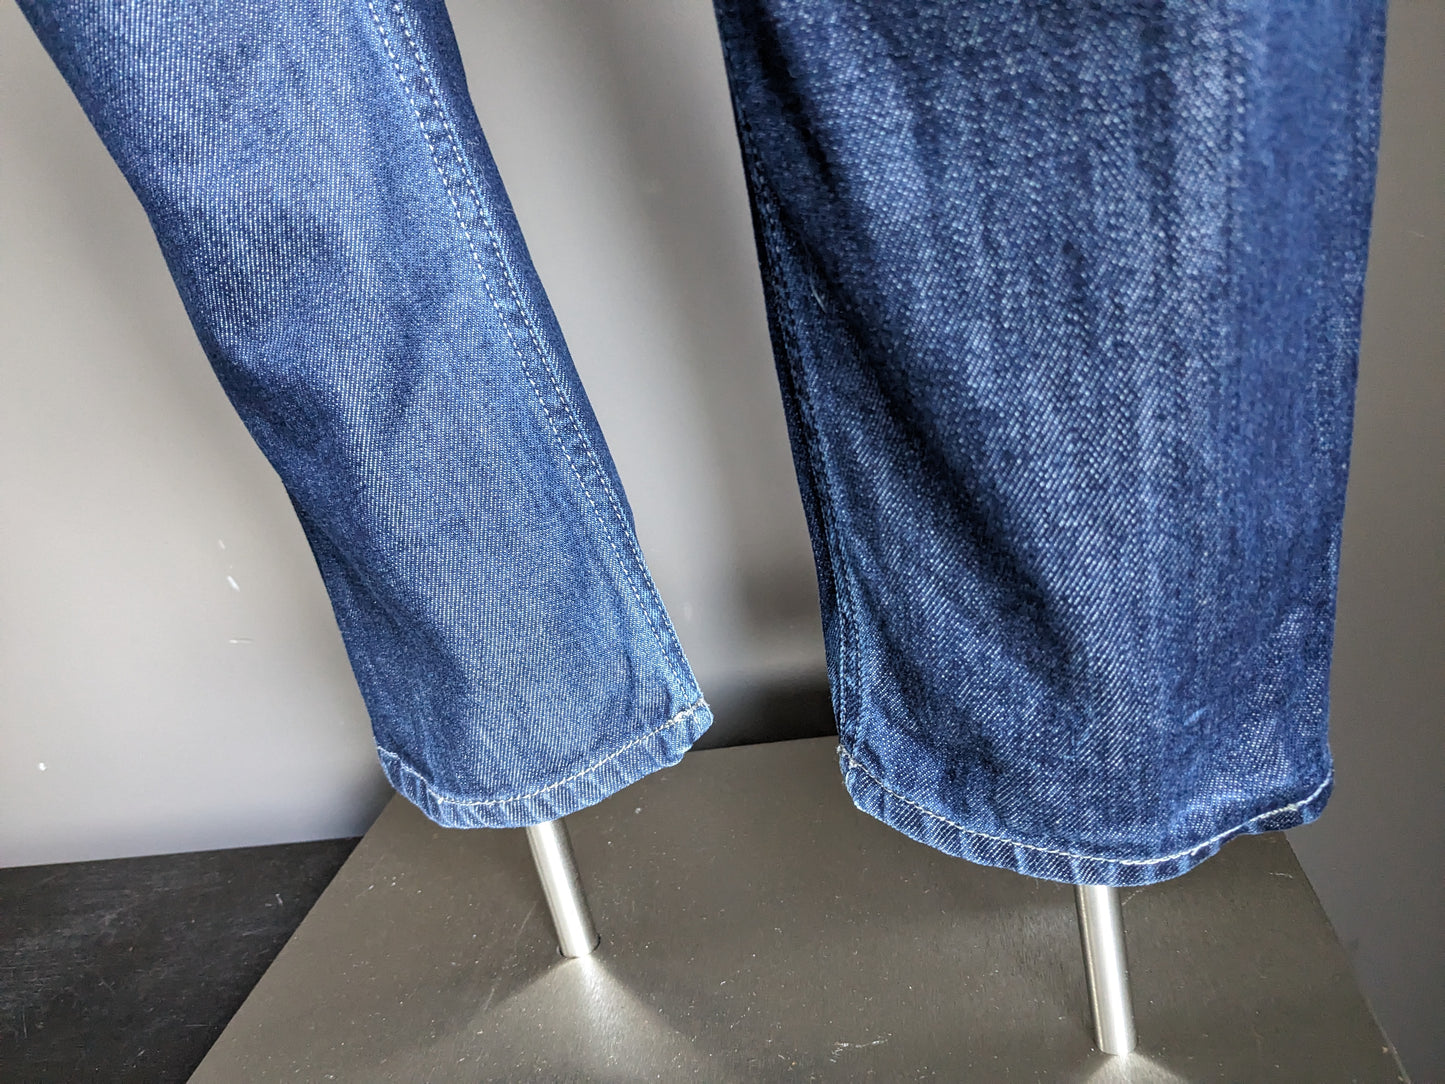 Diesel jeans. Donker Blauw gekleurd. Maat W31 - L32. type "Mennit".